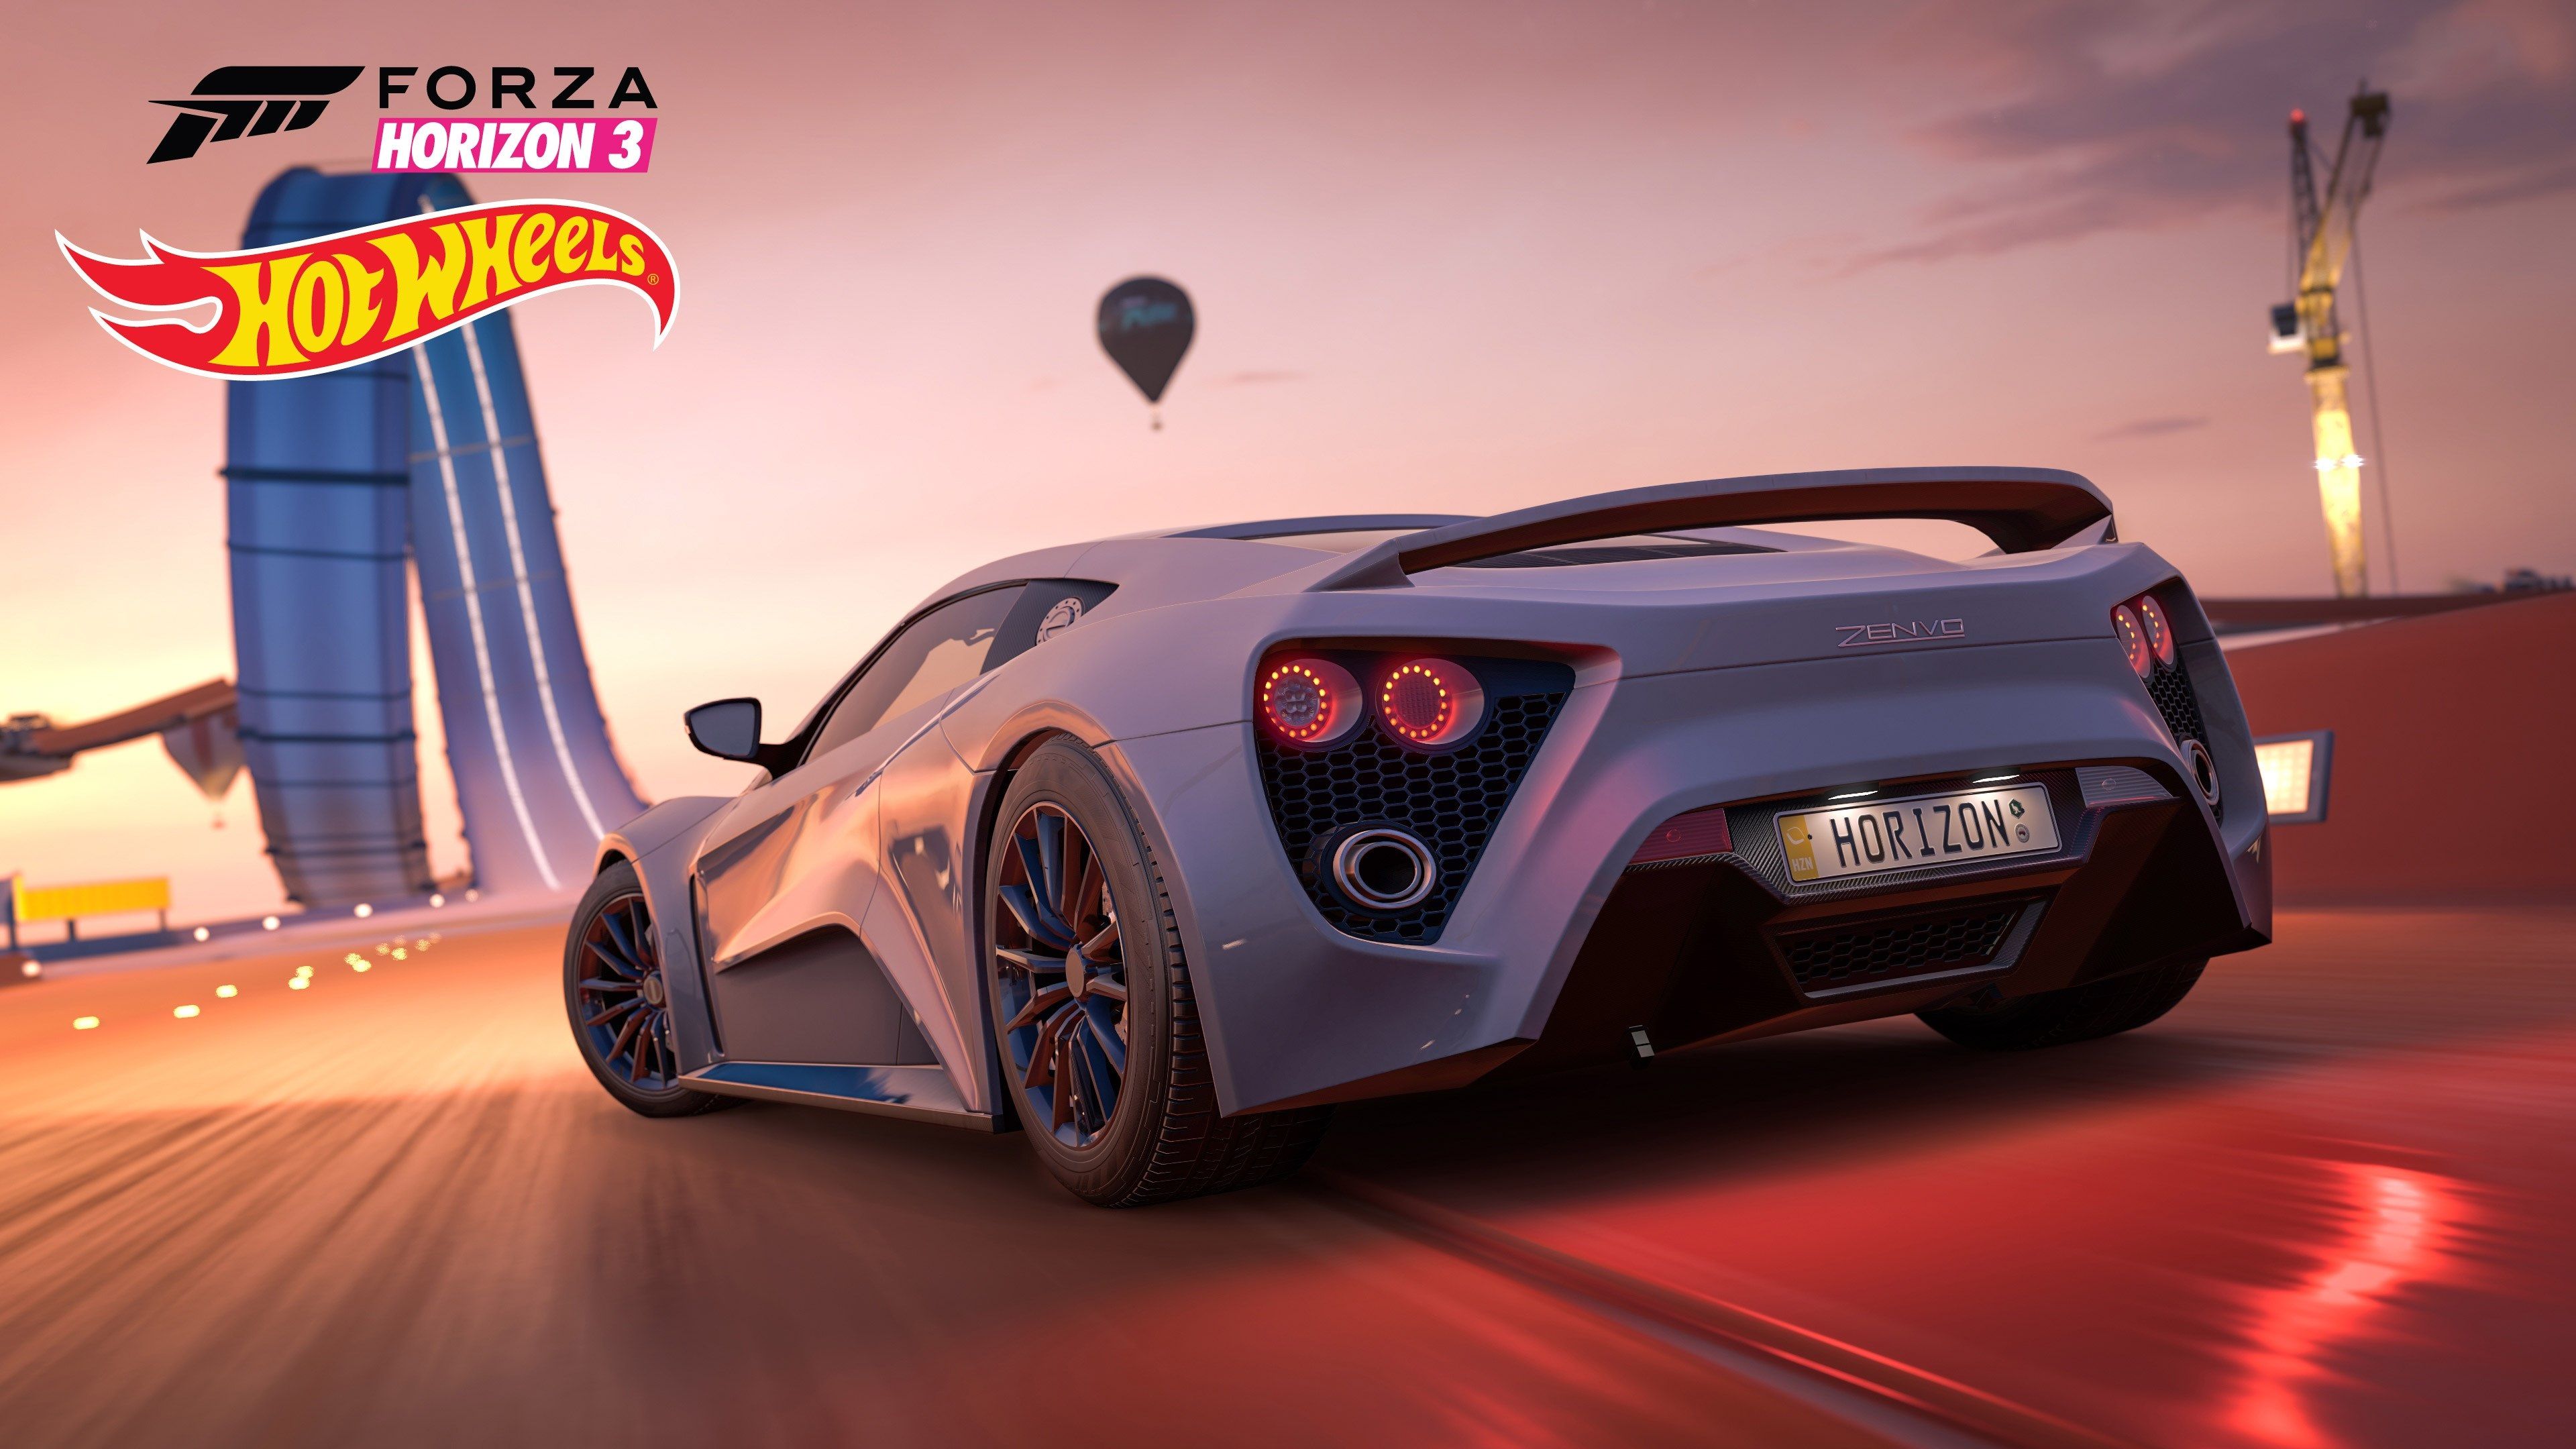 Forza Horizon 3 Hotwheels Cars - HD Wallpaper 